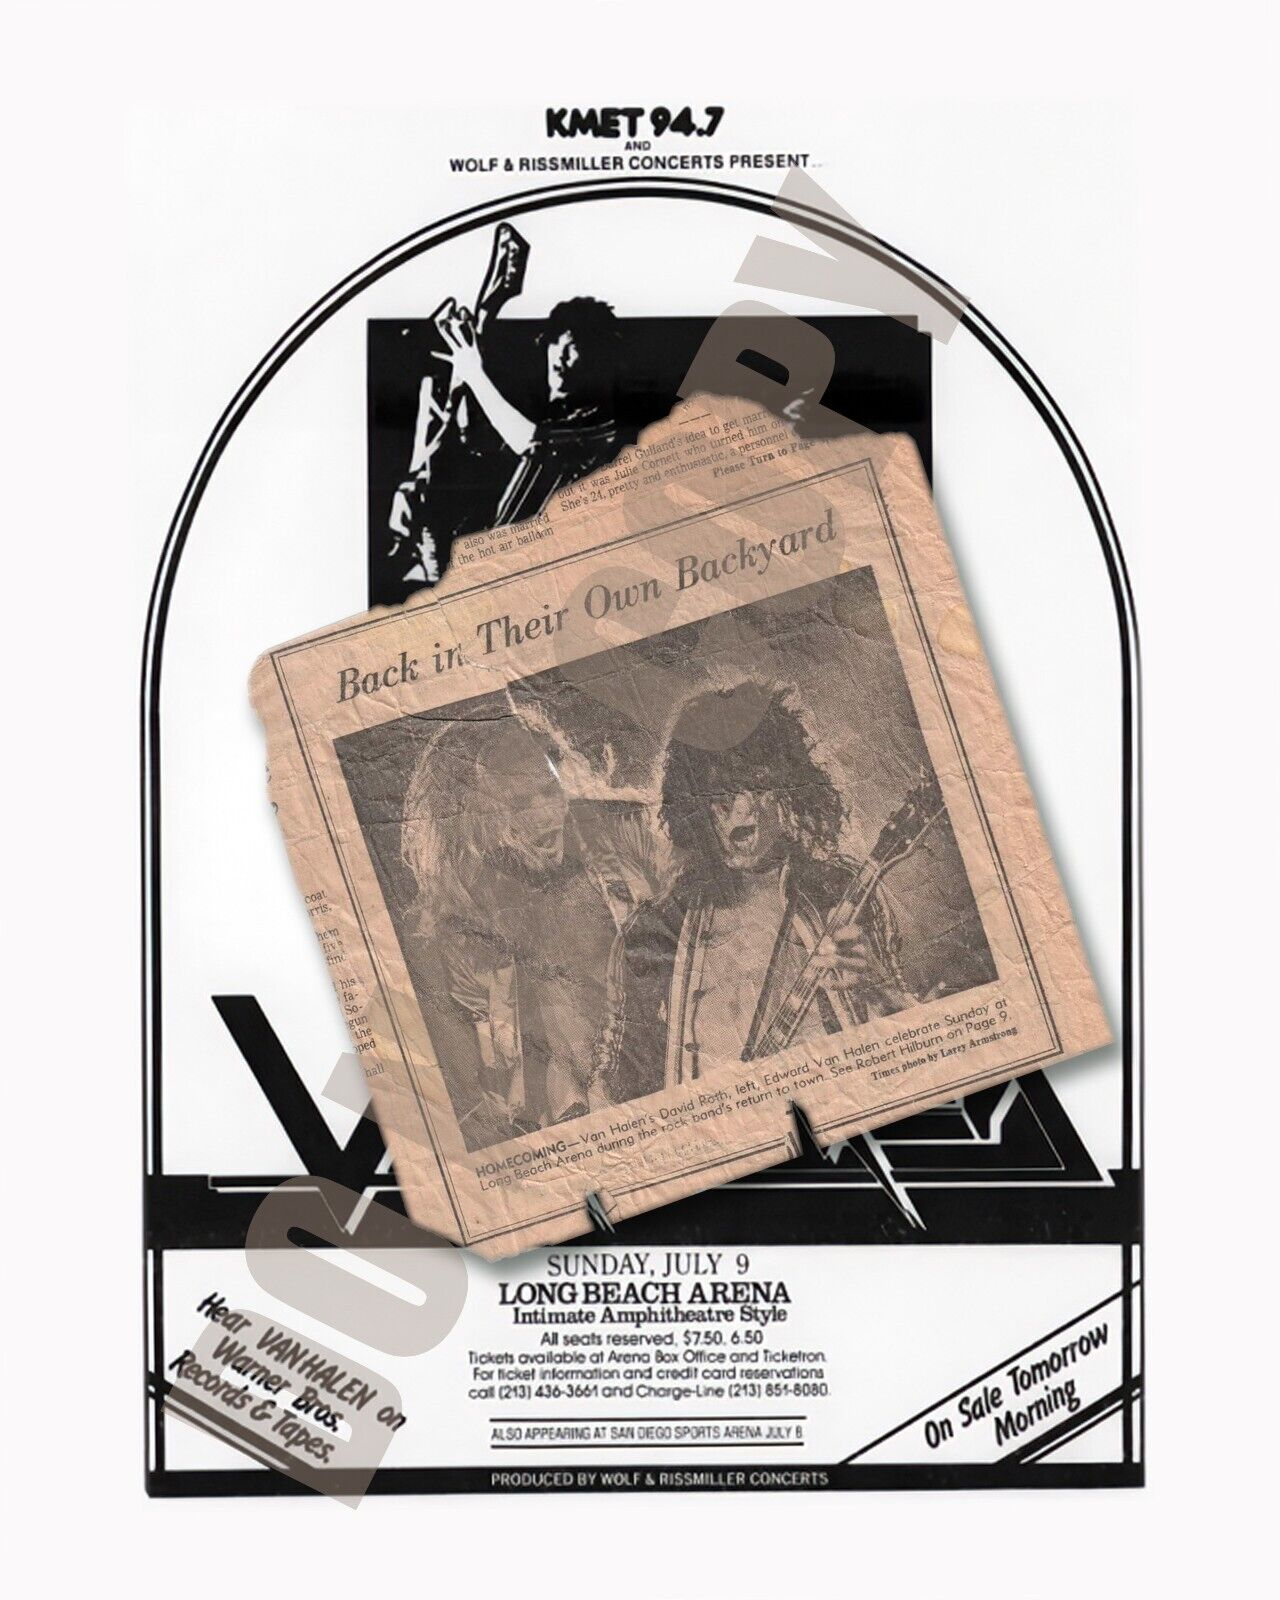 1978 Van Halen KMET Radio Concert Long Beach Arena Newspaper Article 8x10 Photo